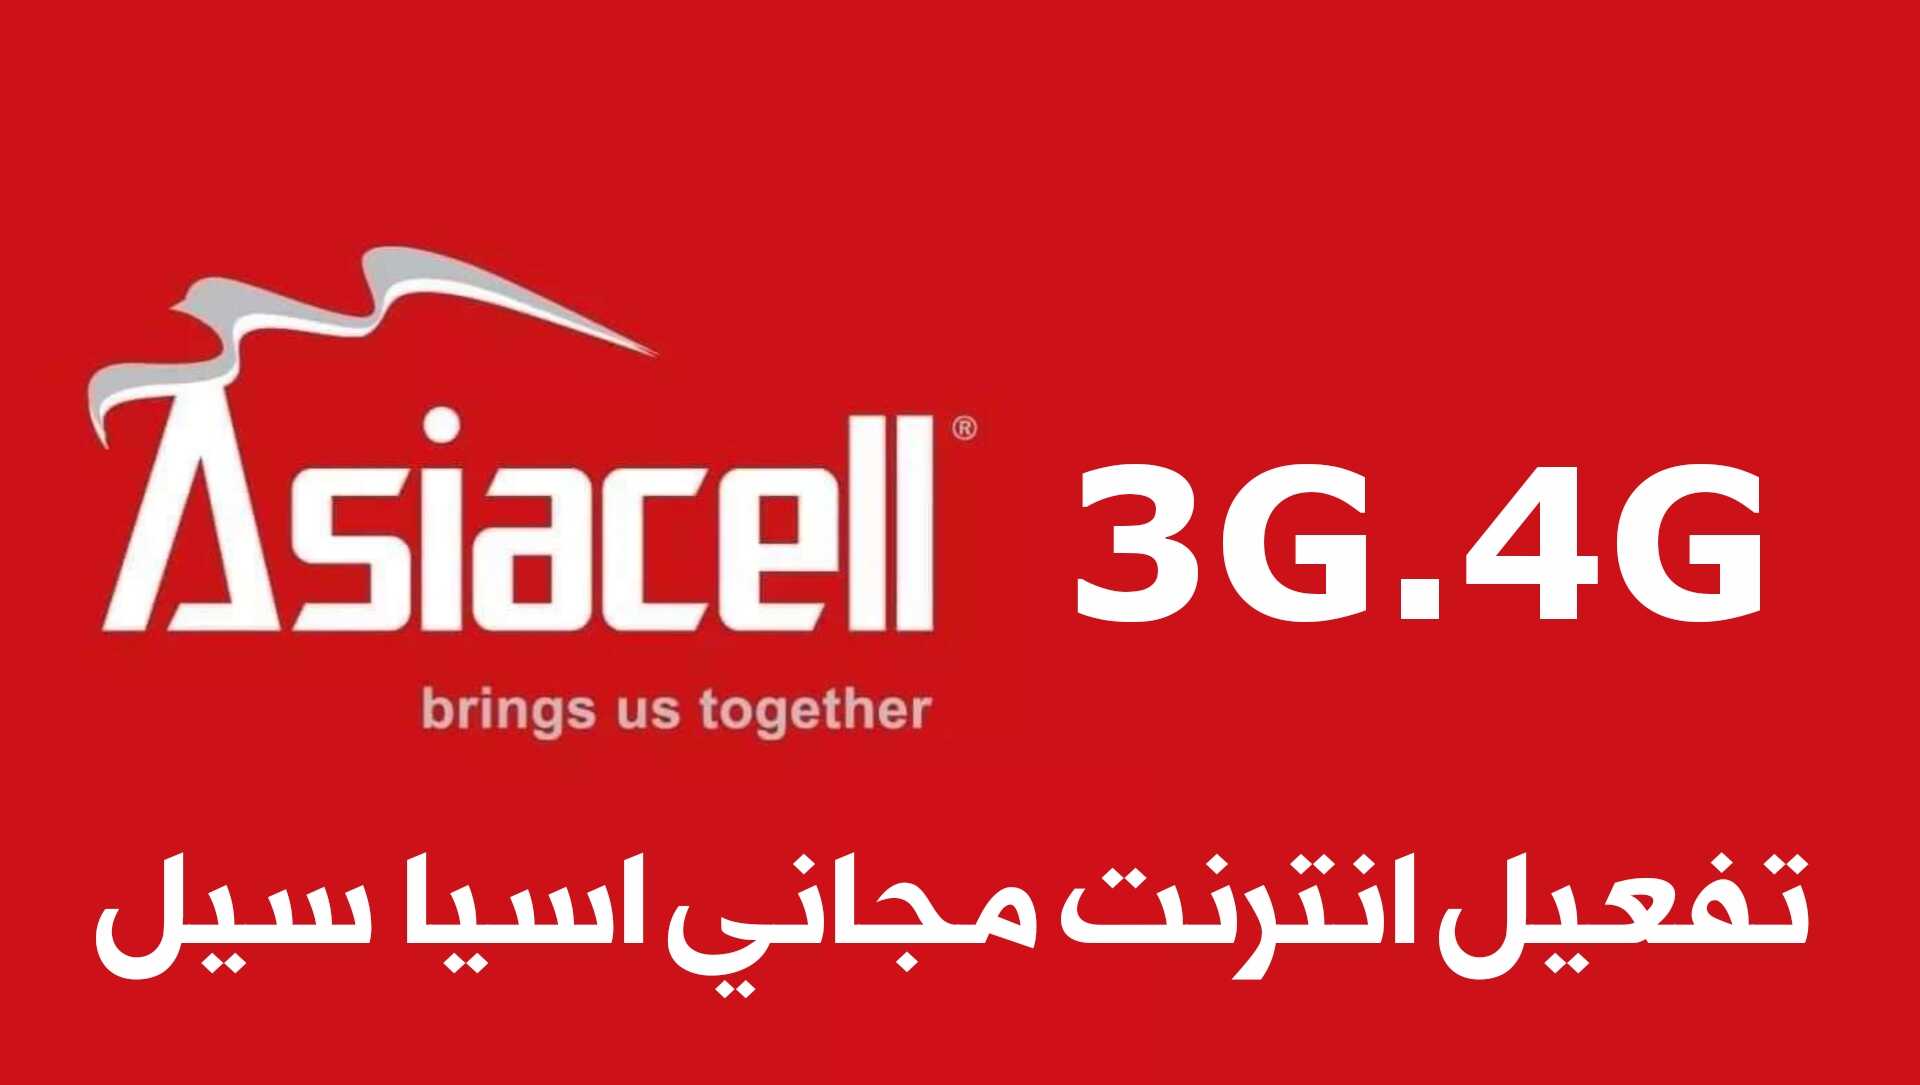 تفعيل انترنت مجاني اسيا سيل 3G.4G في العراق ولجميع الخطوط